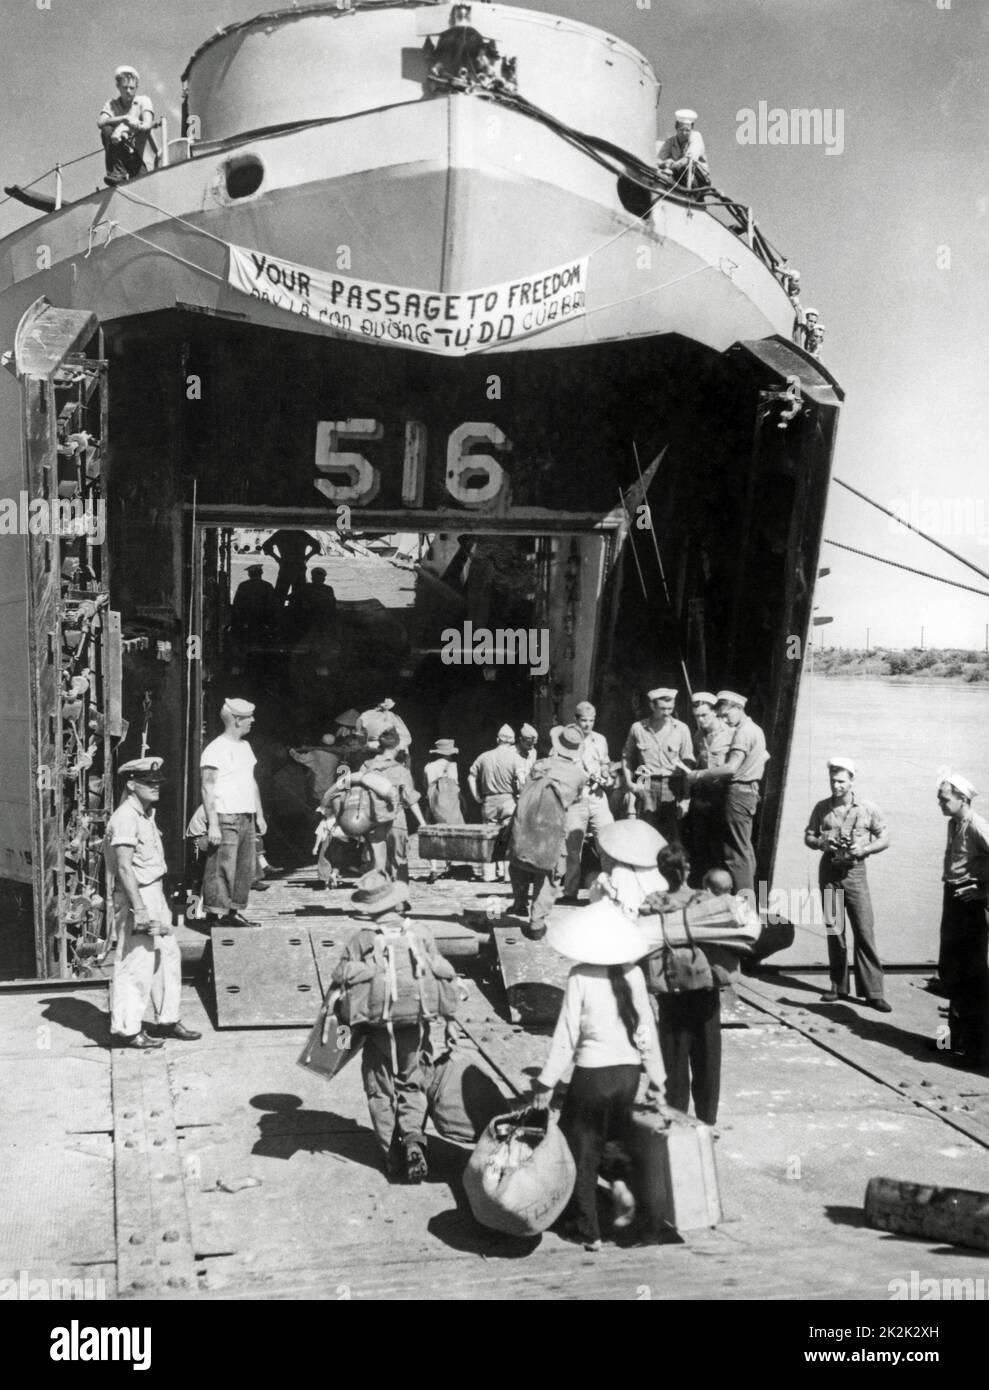 Am Ende des Indochina-Krieges begeben sich Hunderte vietnamesische Flüchtlinge auf ein Boot der US-Marine, um in die Republik Vietnam zu fahren. Diese Operation wird als "Operation Passage to Freedom" bezeichnet. Oktober 1954 Stockfoto